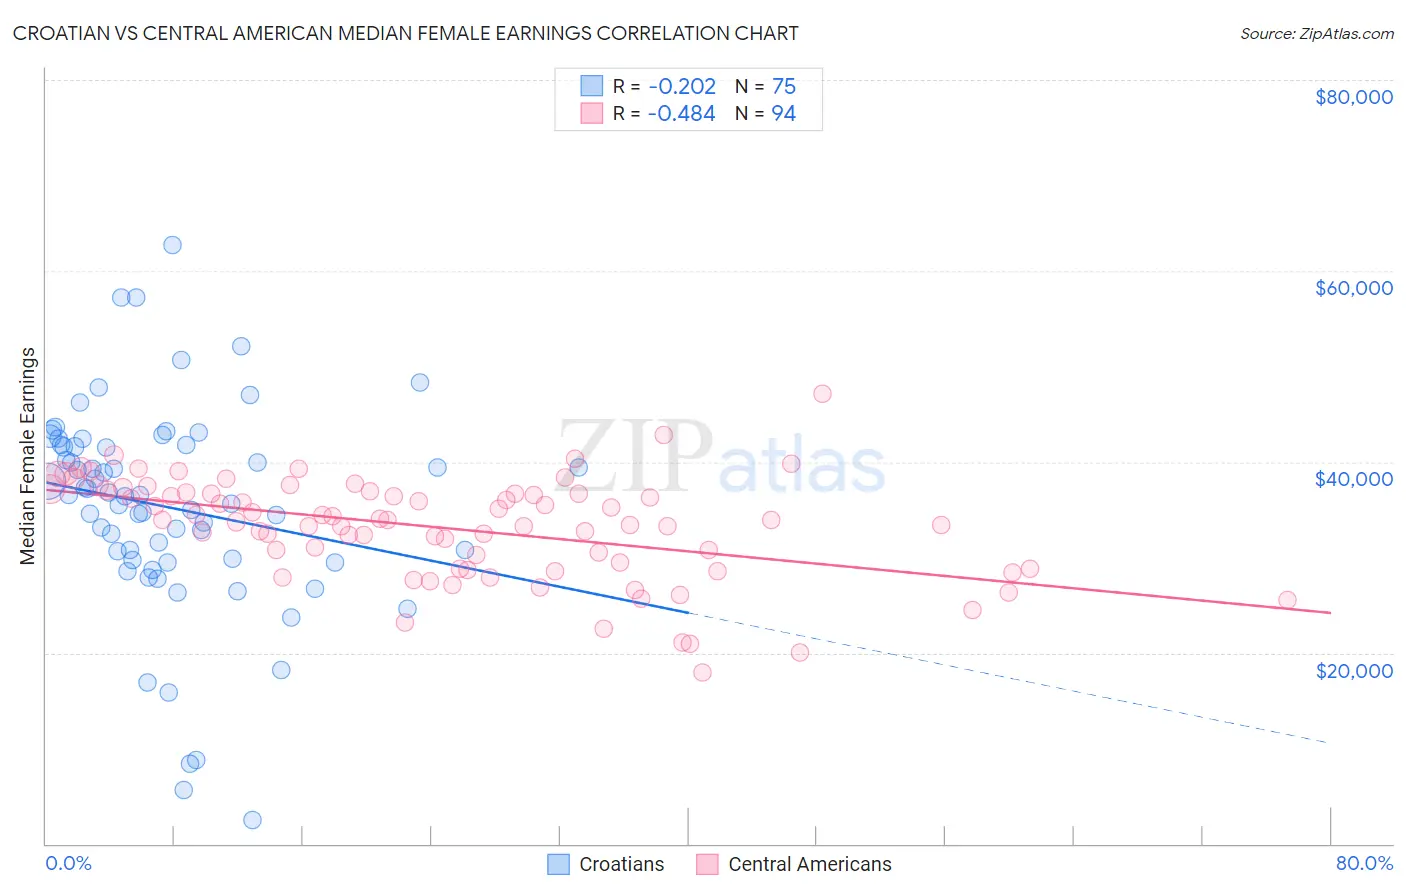 Croatian vs Central American Median Female Earnings